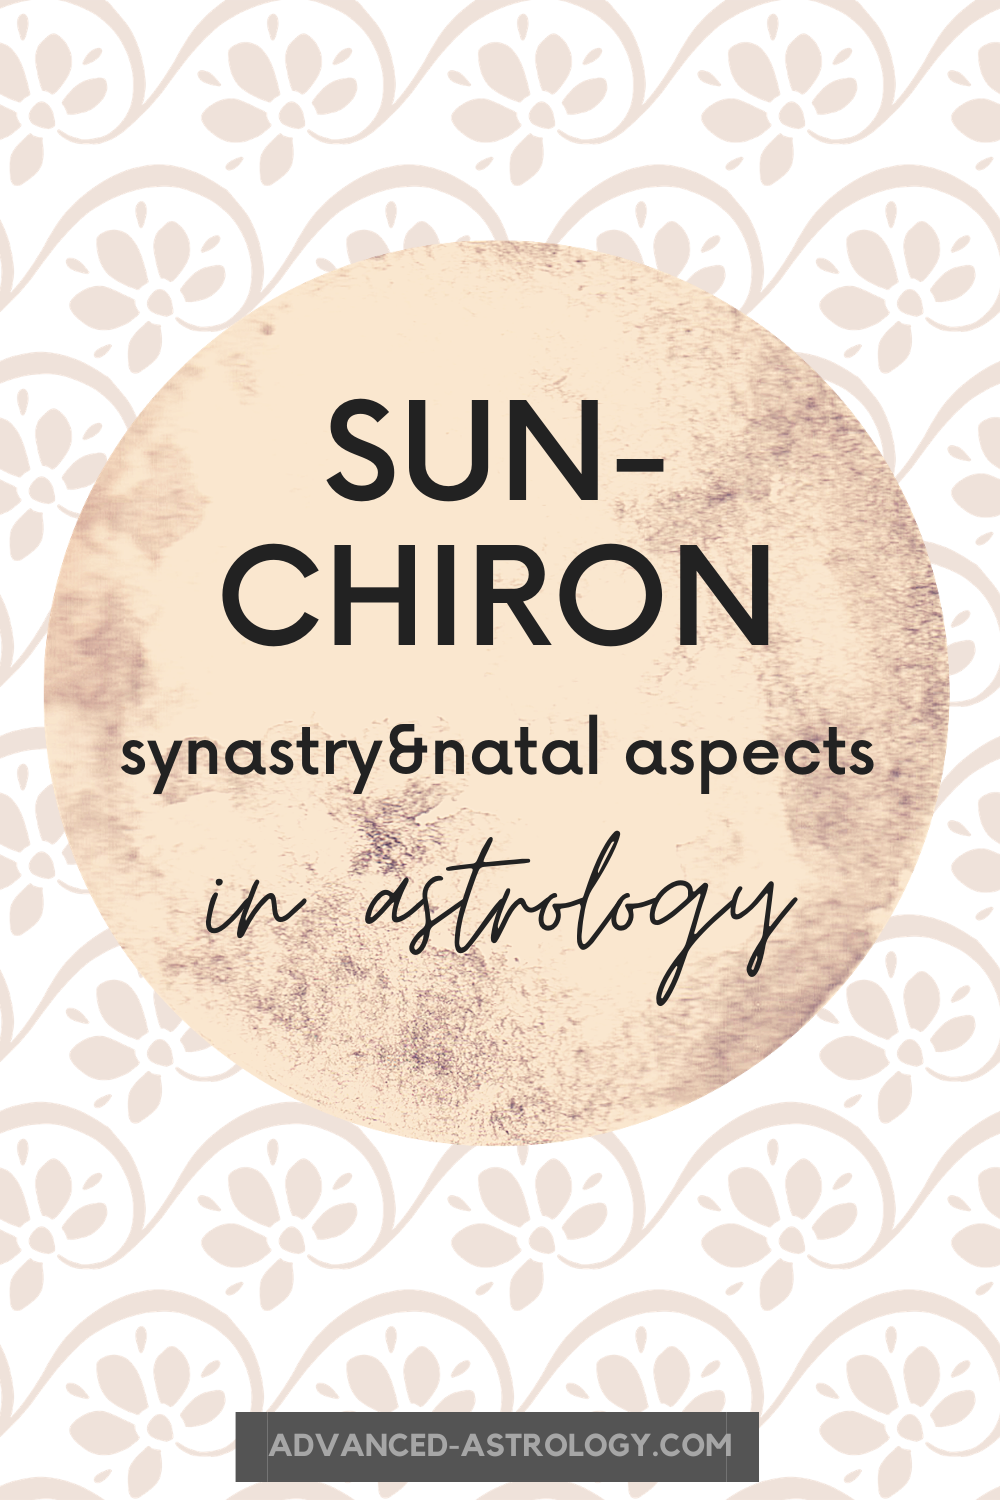  خورشید پیوند Chiron: معنای سیناستری، ناتال و گذر